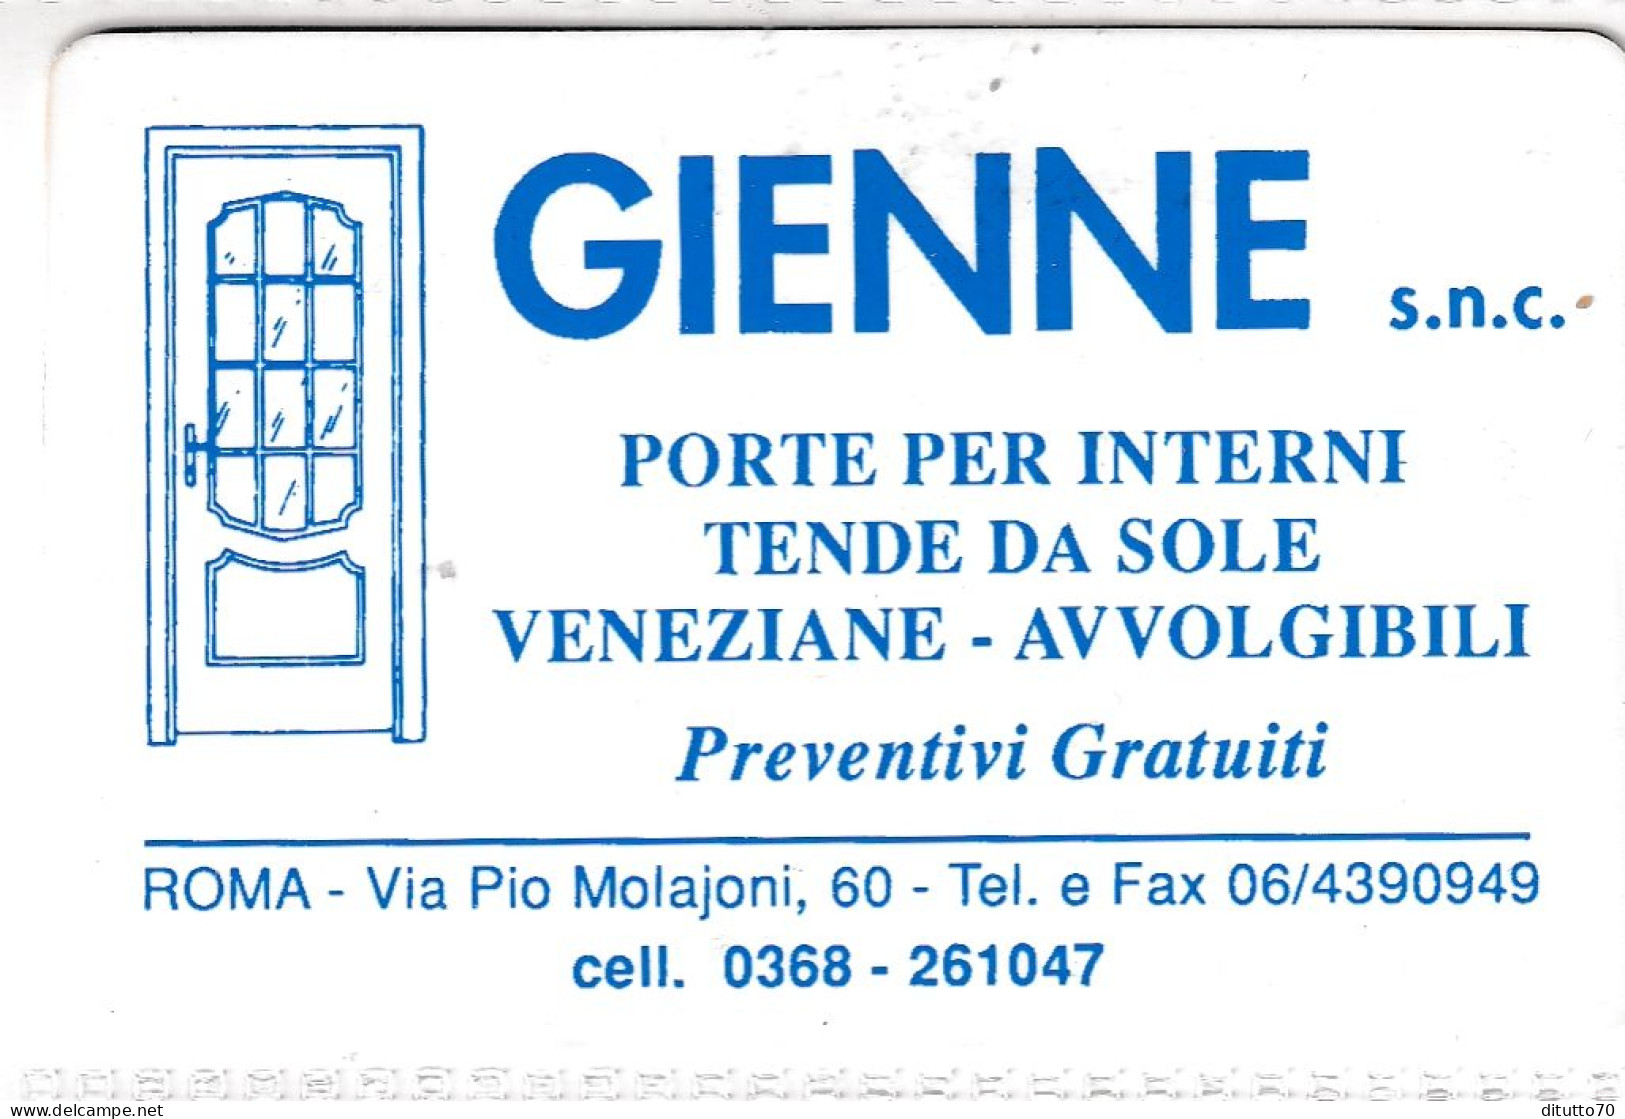 Calendarietto - Gienne - Roma - Anno 1997 - Klein Formaat: 1991-00